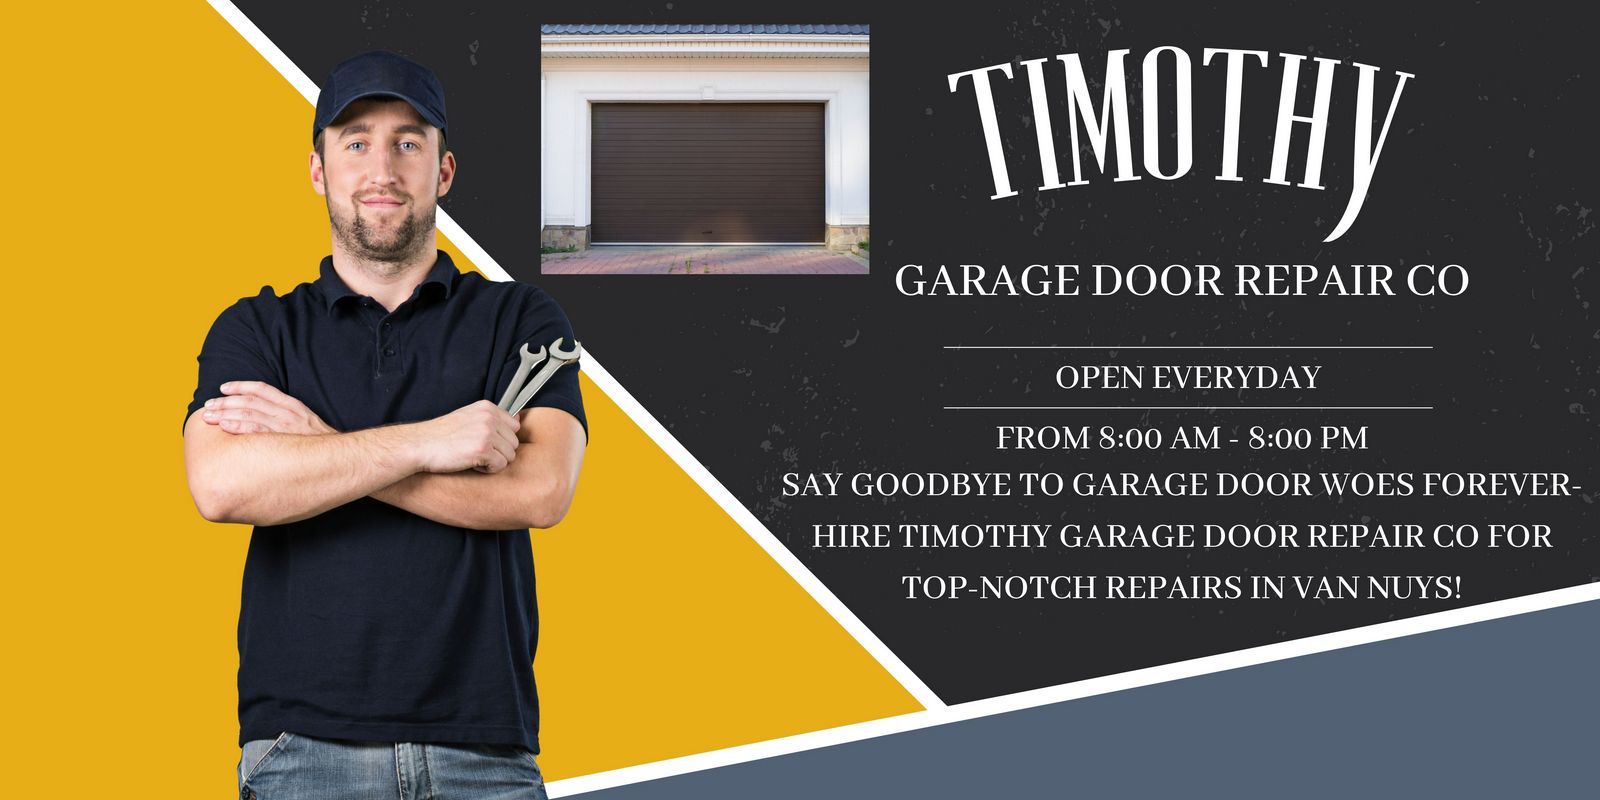 Timothy Garage Door Repair Co